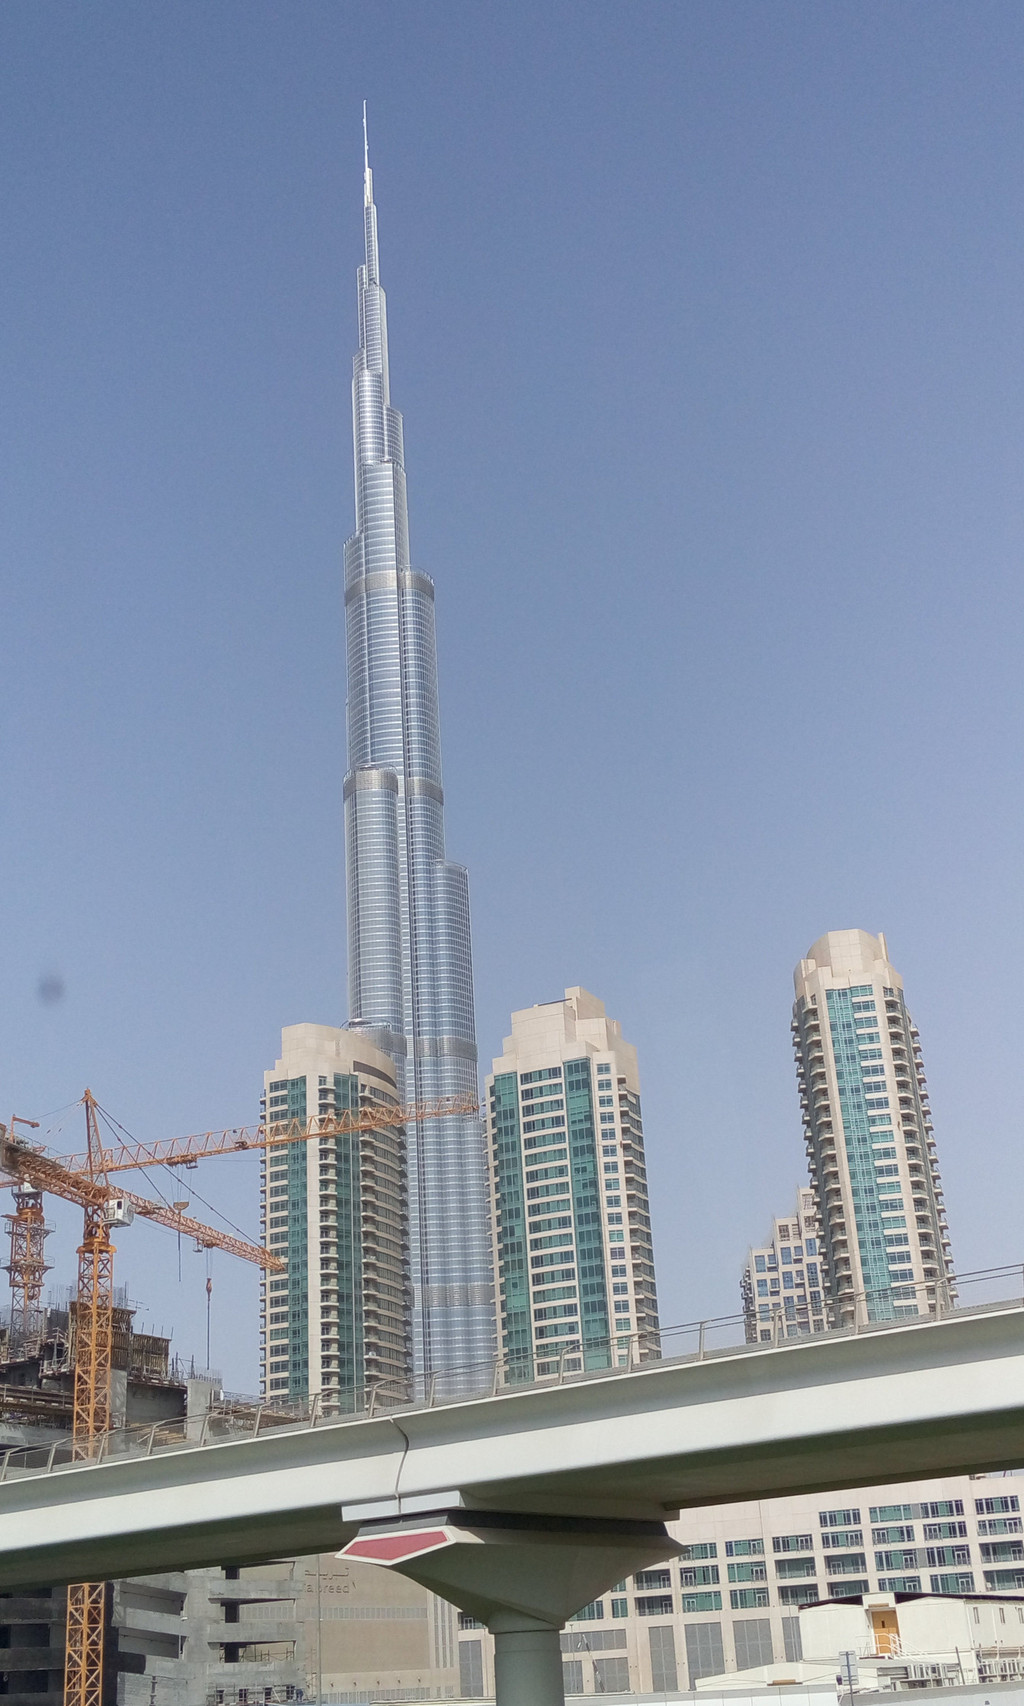 迪拜世界上第一高建筑大楼--哈利法塔,外观达868米穿越云霄.